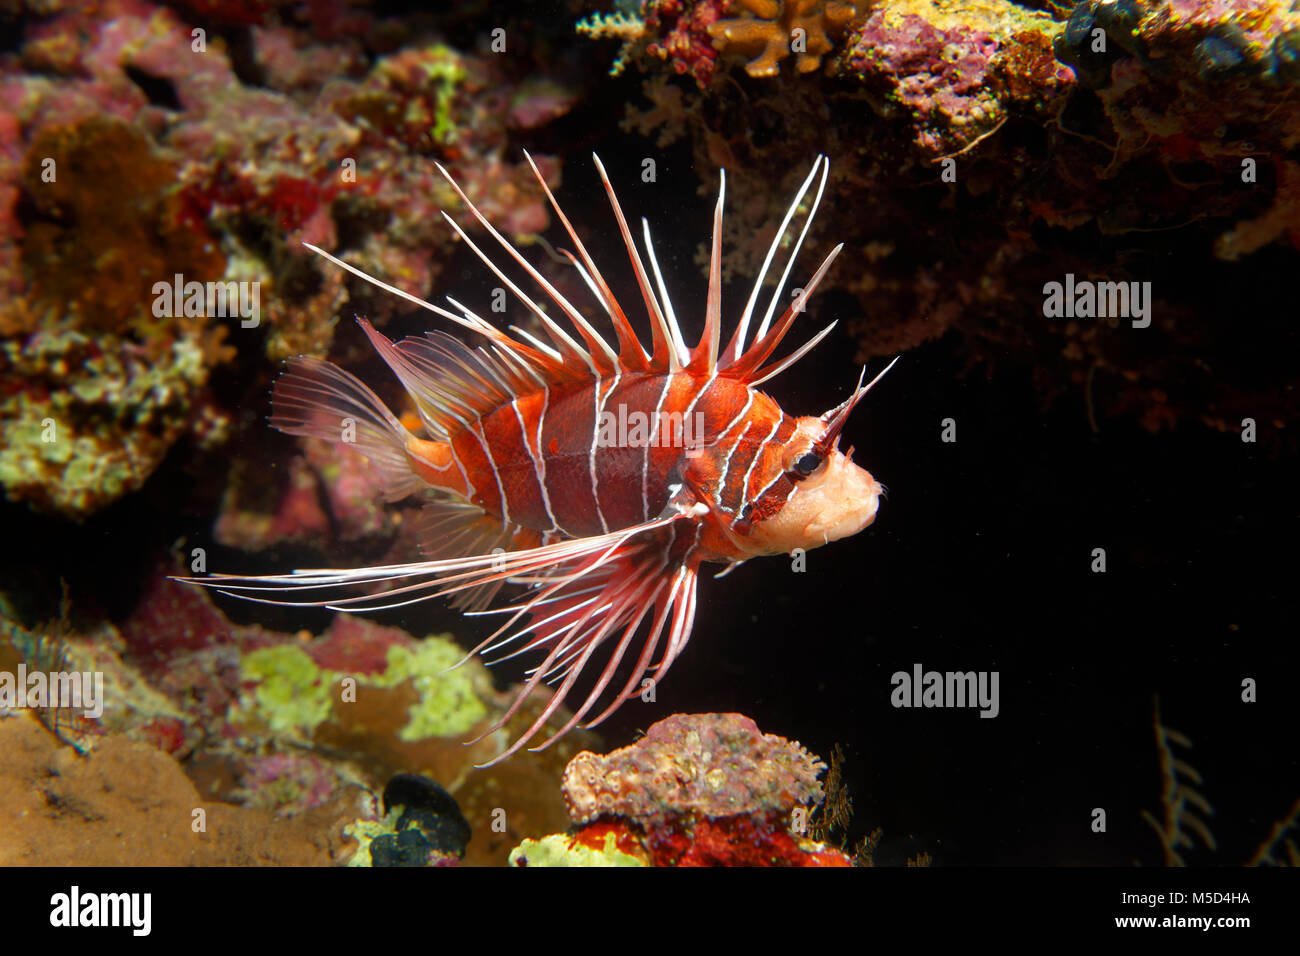 Firefish radiale (Pterois radiata) presso la barriera corallina, notturno, Mar Rosso, Egitto Foto Stock